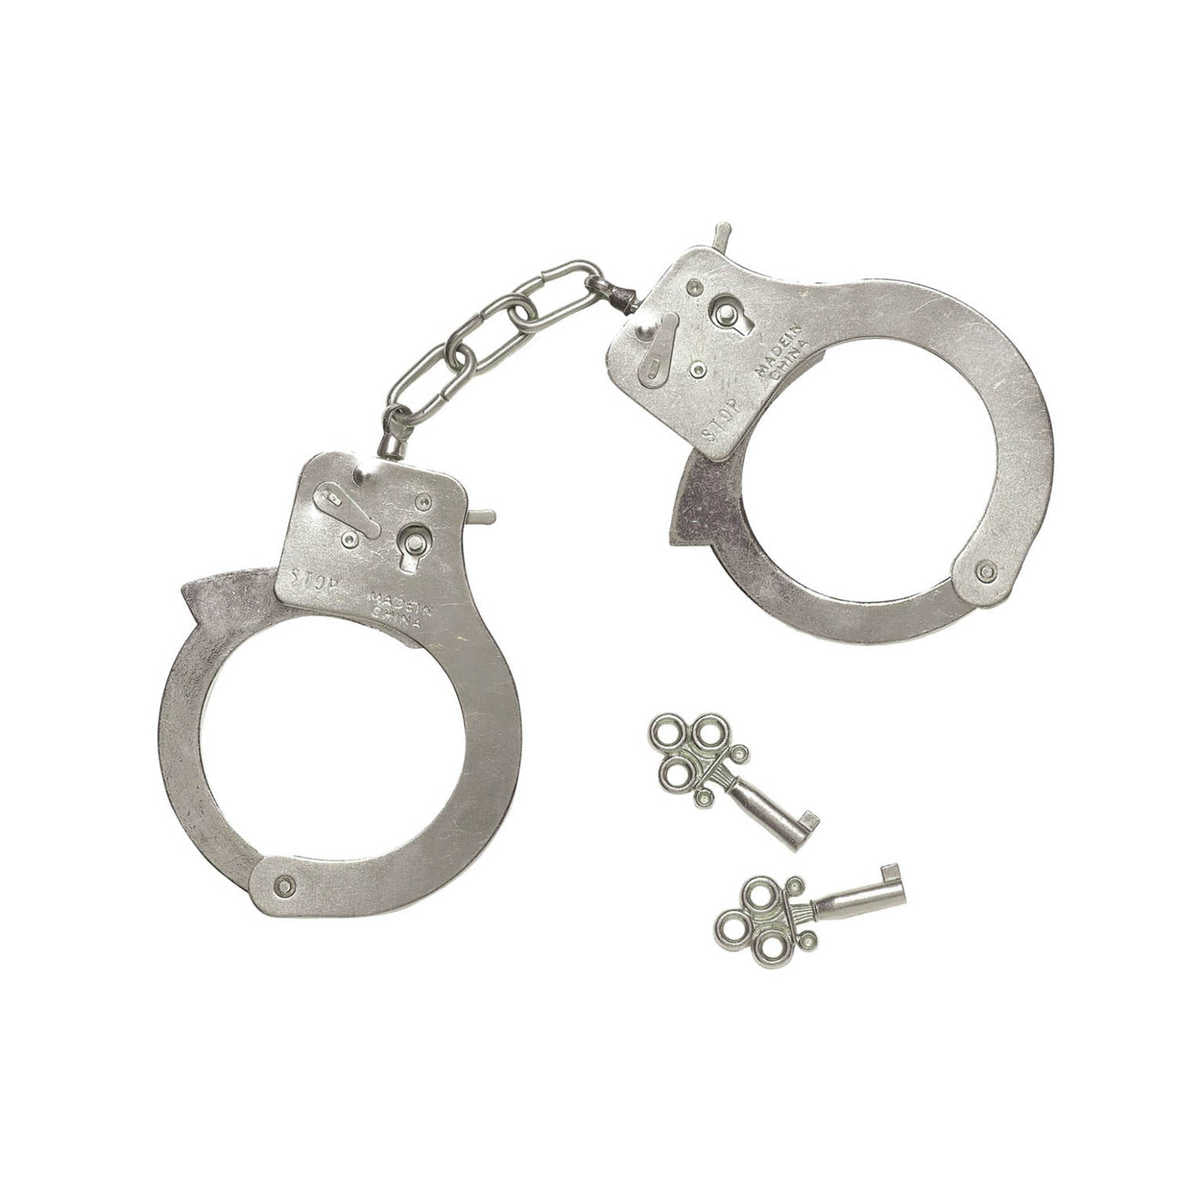 Lightweight Metal Handcuffs